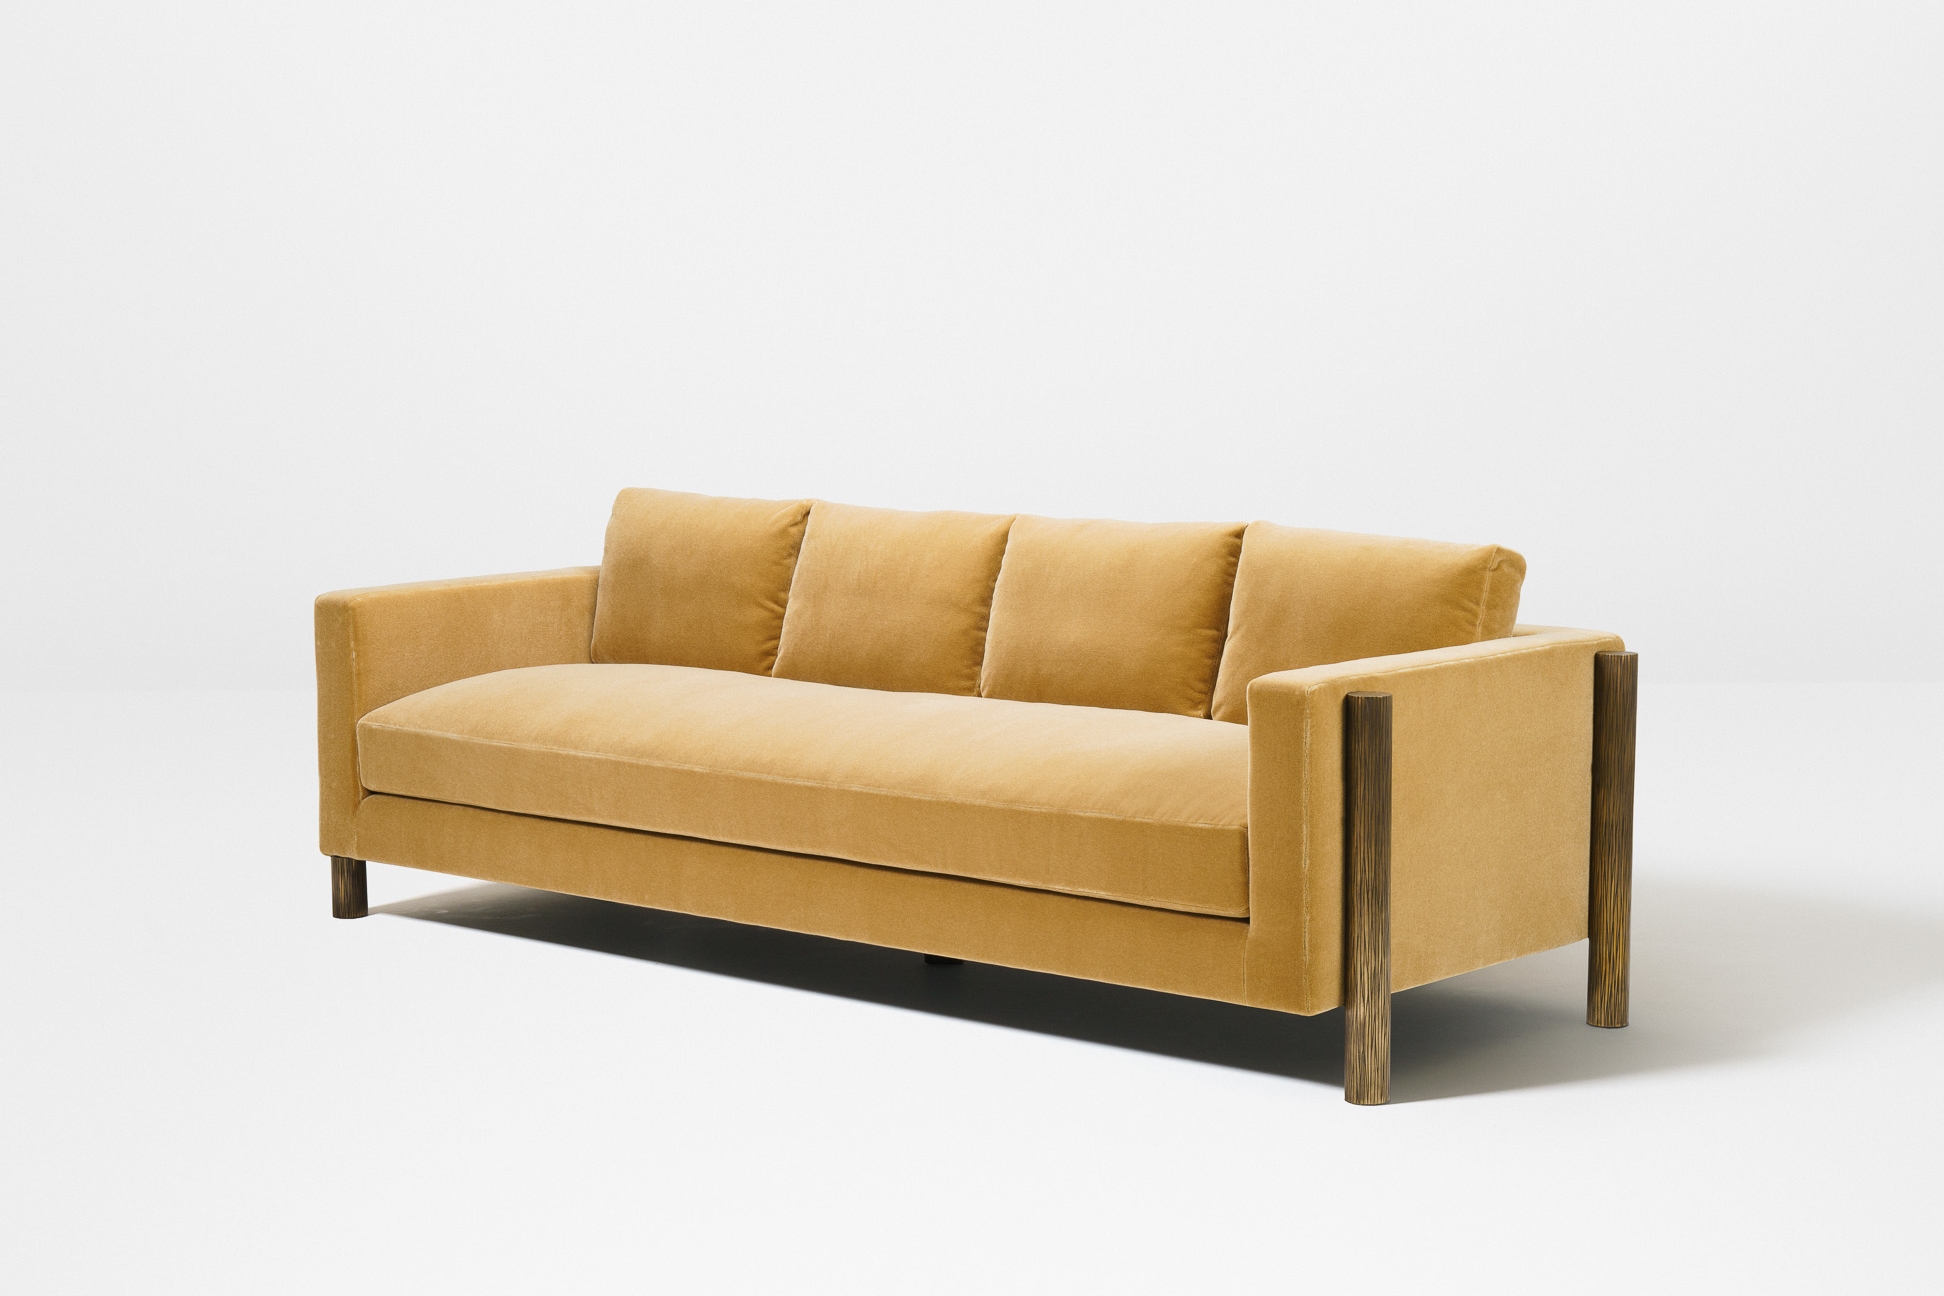 Turgi sofa - angle-LOW-RES.jpg